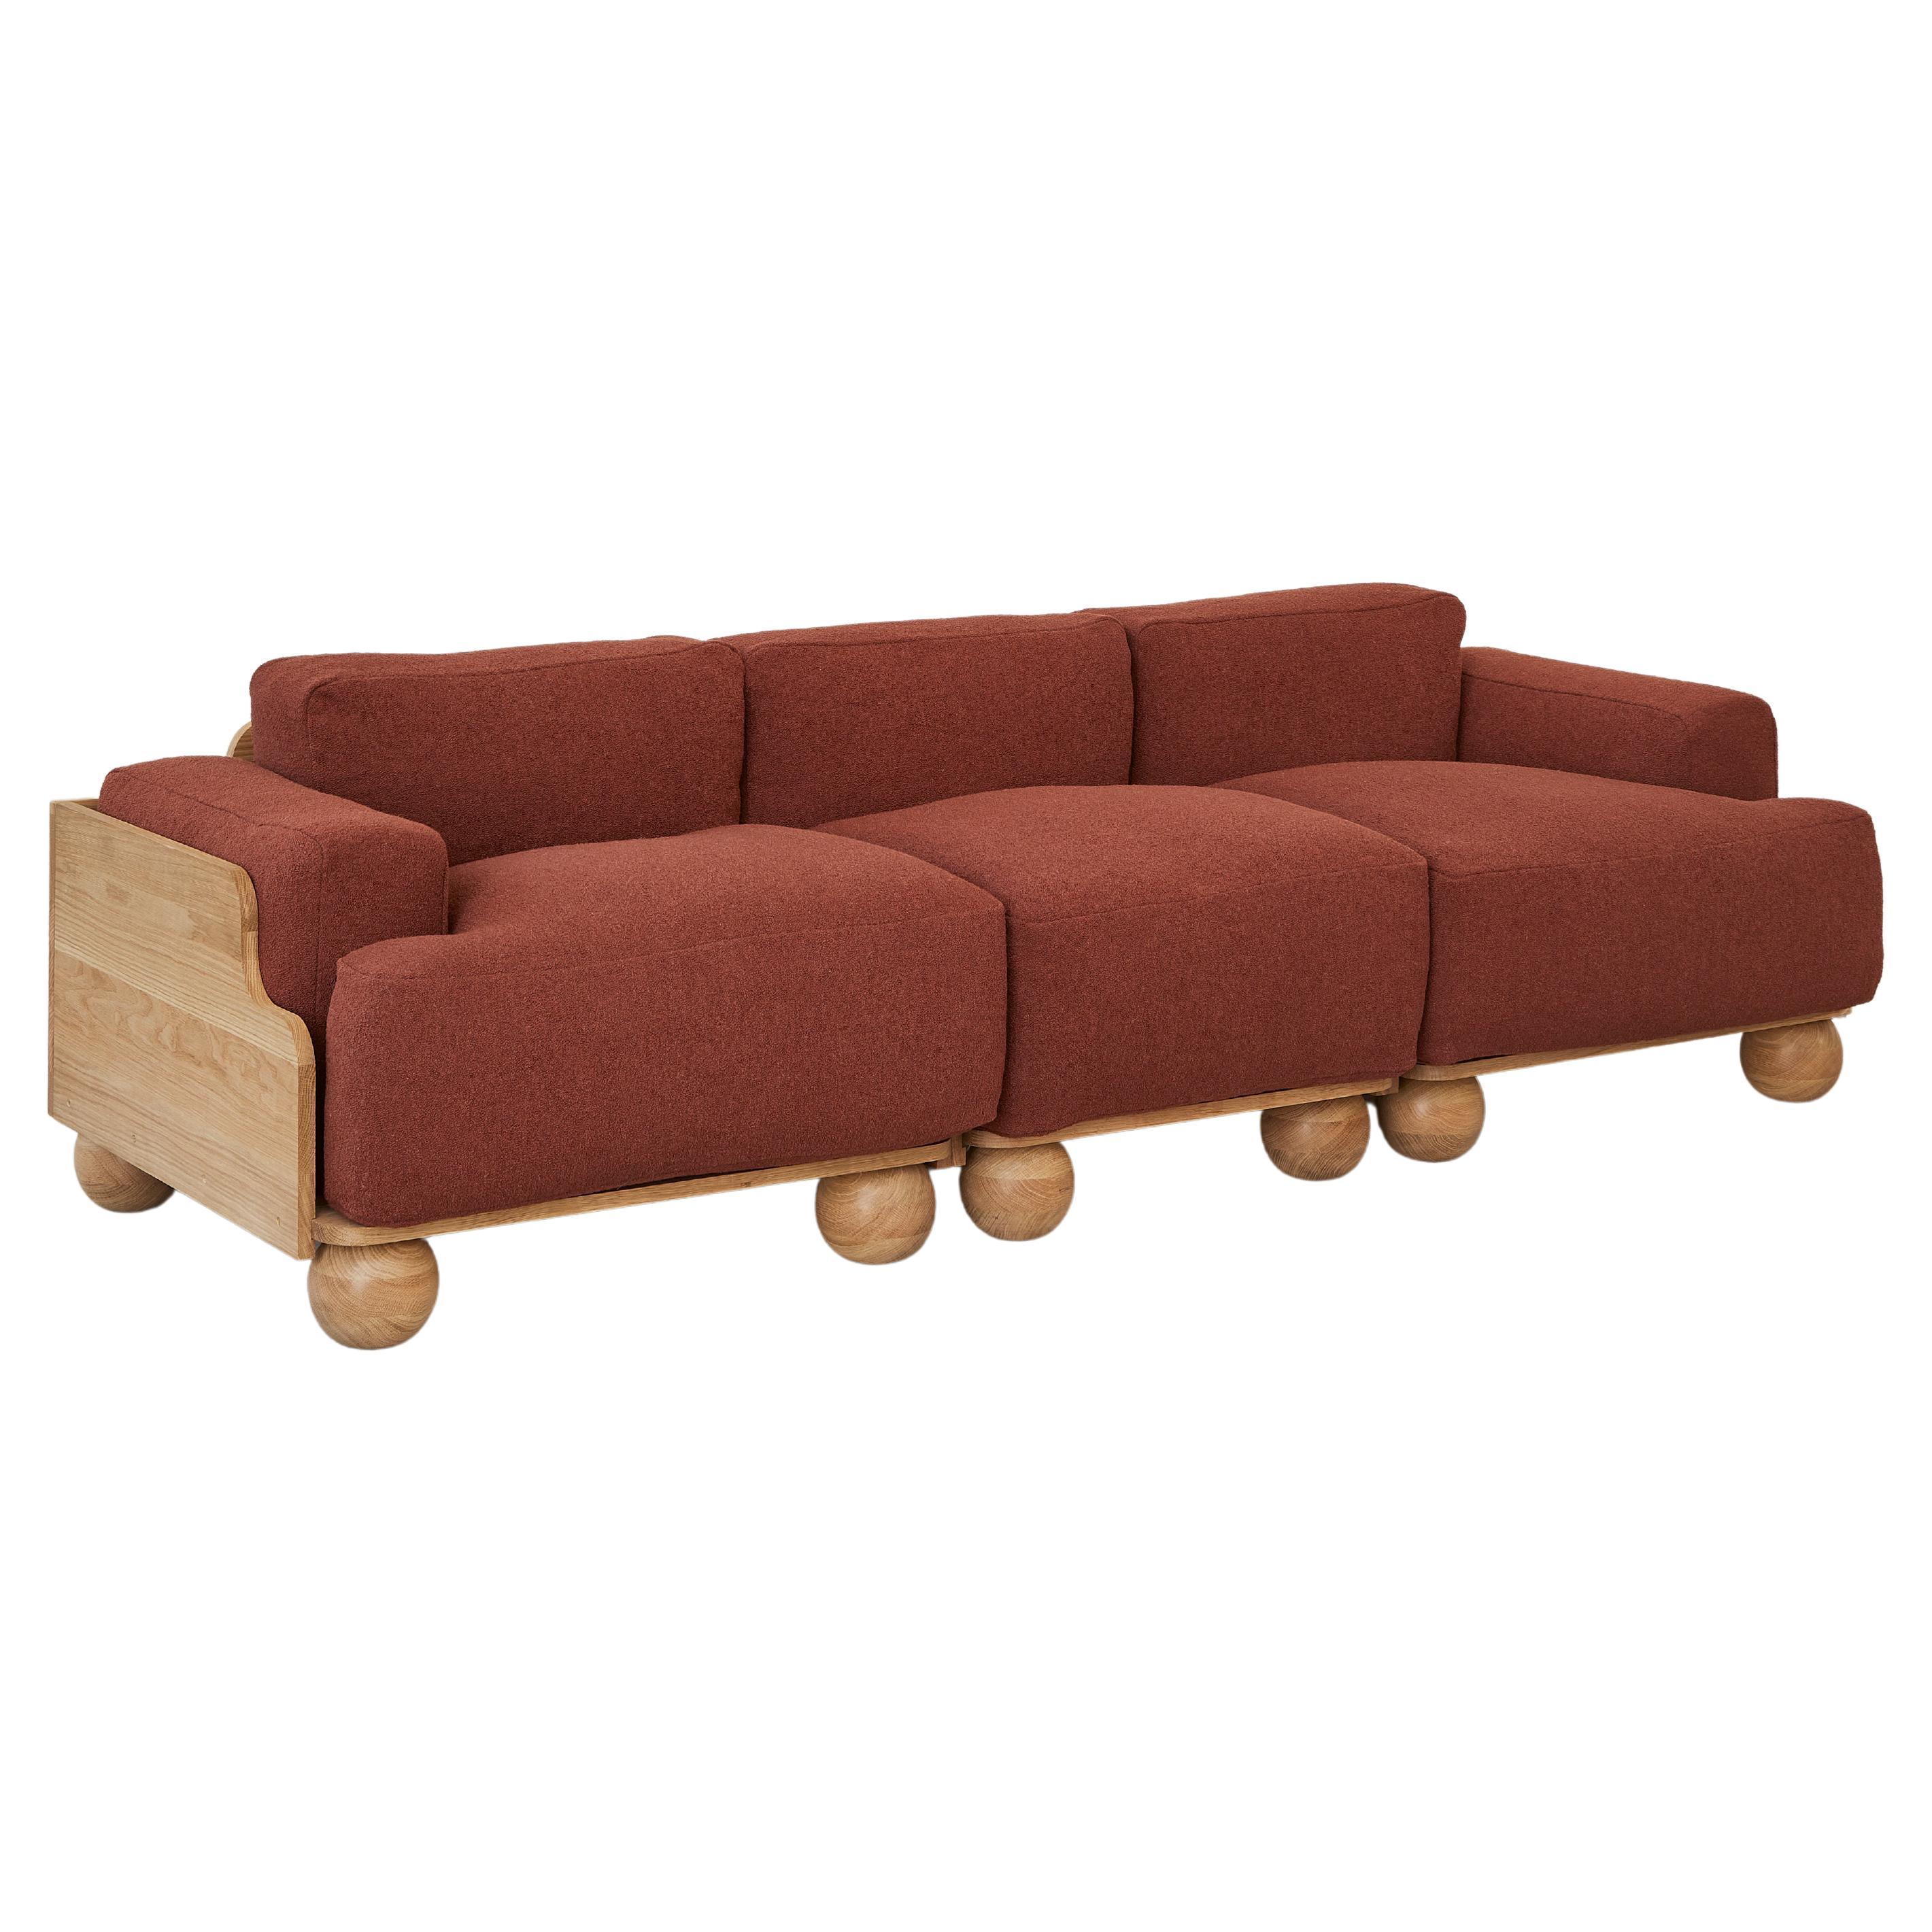 Cove 3.5 Seater Sofa in Terracotta Red